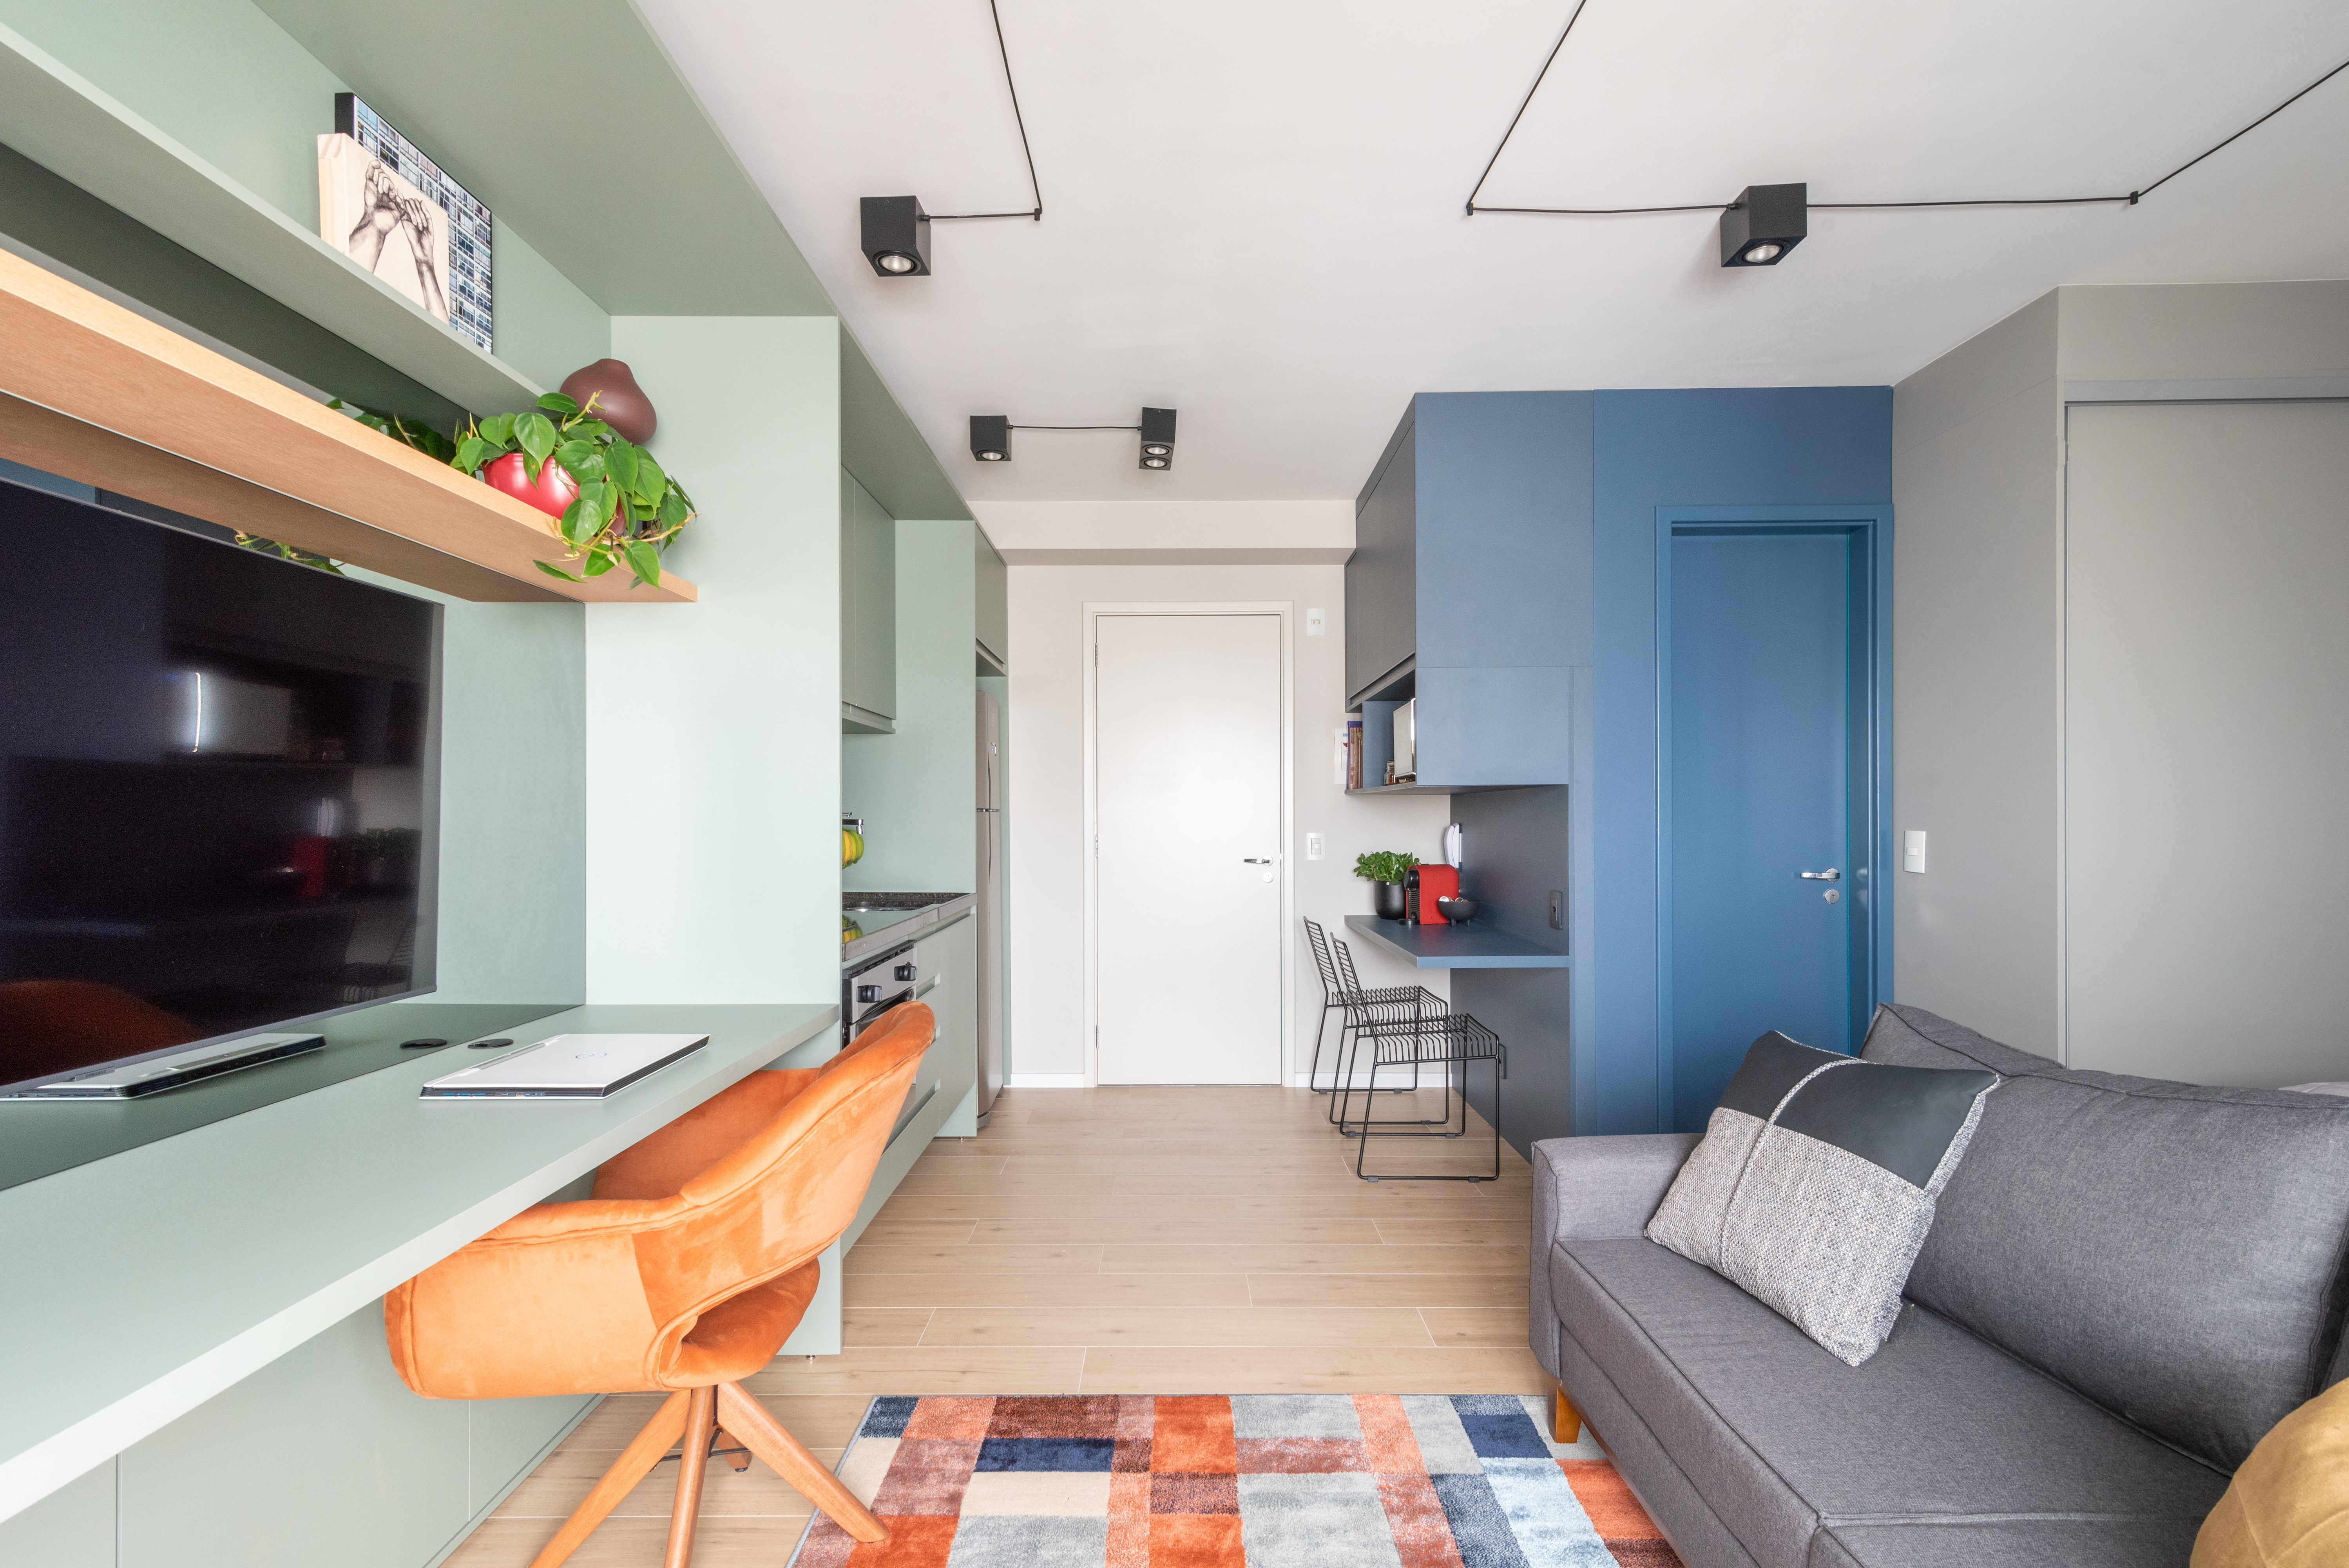 Caixa de marcenaria verde abriga cozinha, bancada e tv em estúdio de 34 m². Projeto de Abrazo Arquitetura. Na foto, sala, parede e marcenaria azul, poltrona, tapete quadriculado colorido.